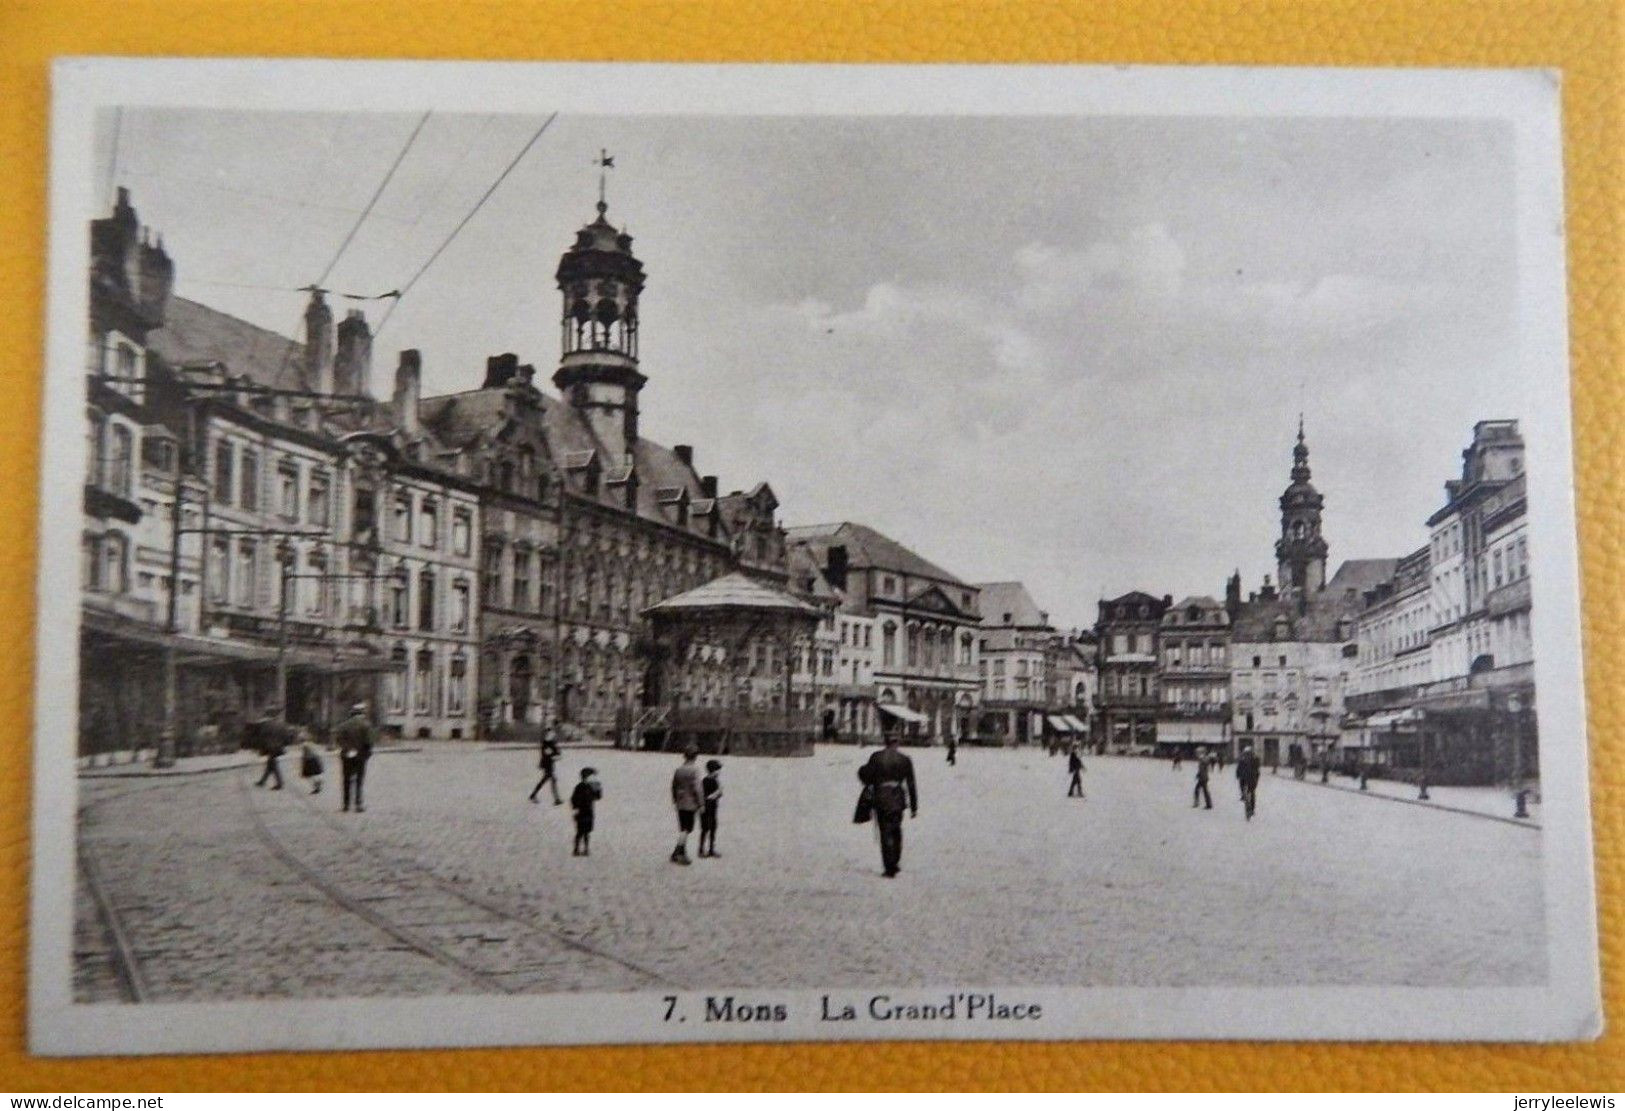 MONS  - 2 CARTES  :  La Grand Place  -  L'Hôtel De Ville - Mons